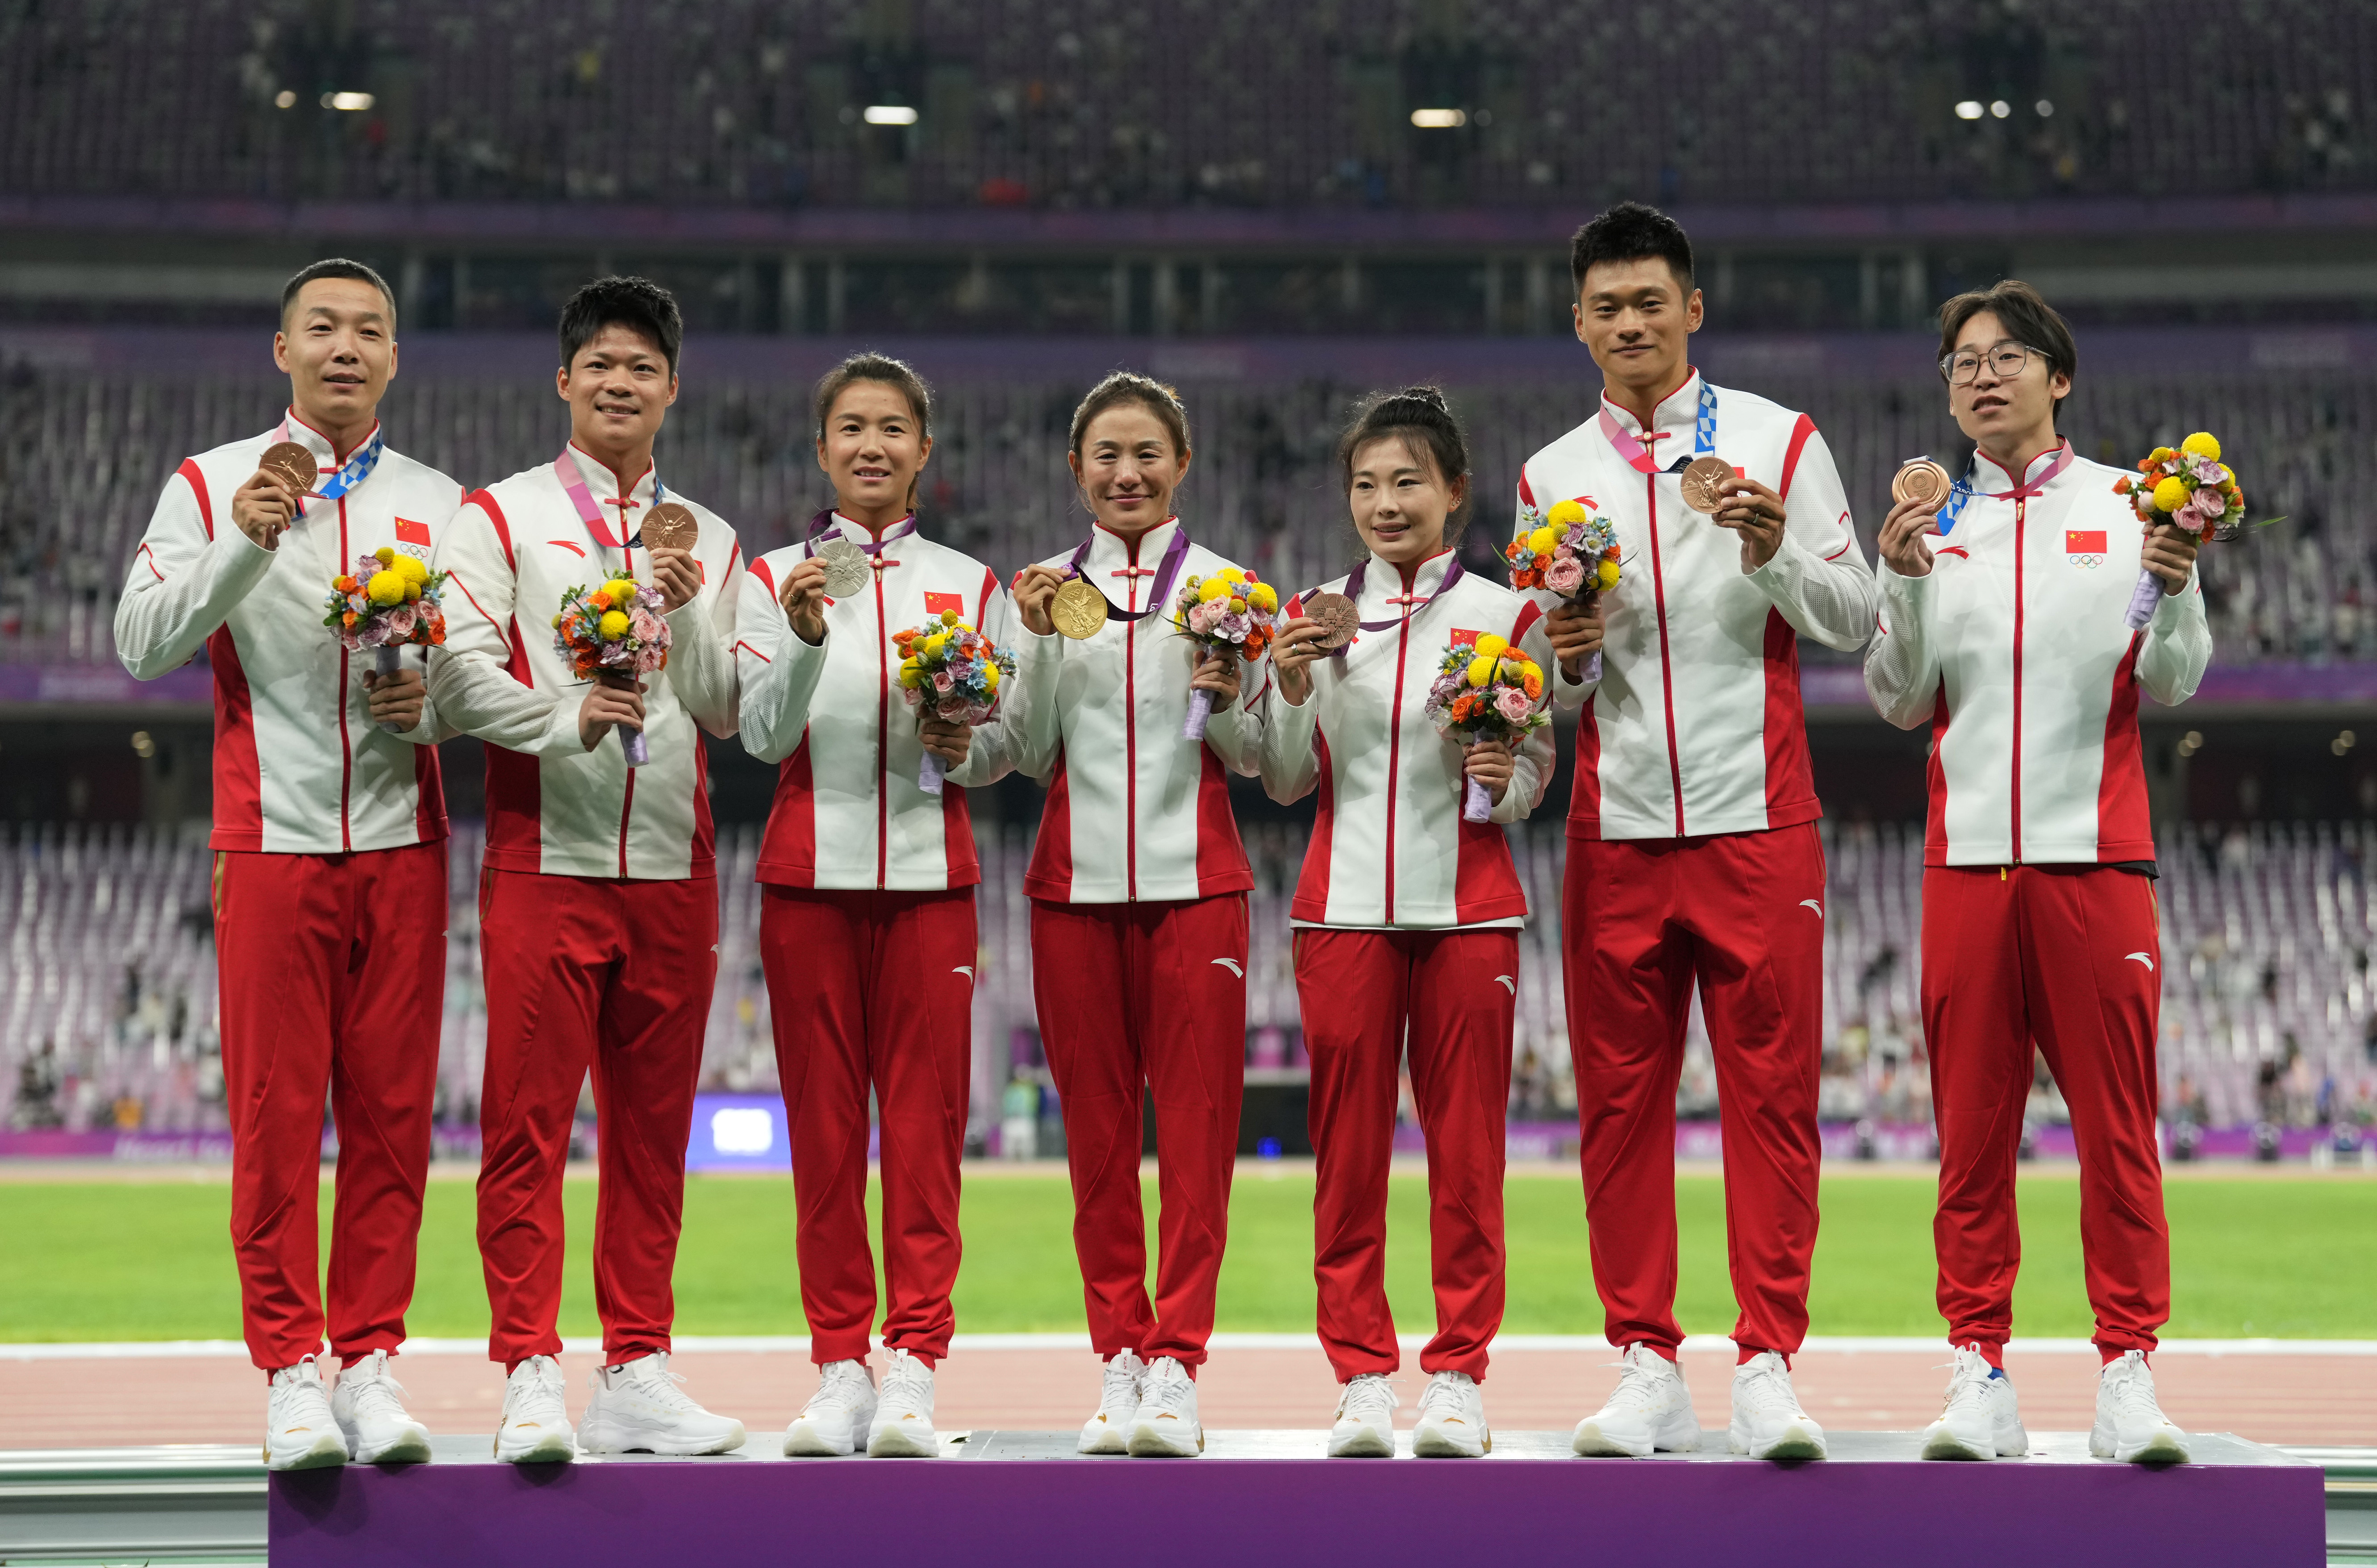 刘虹和吕秀芝分别站上冠,亚,季军领奖台,拿到递补的2012年伦敦奥运会